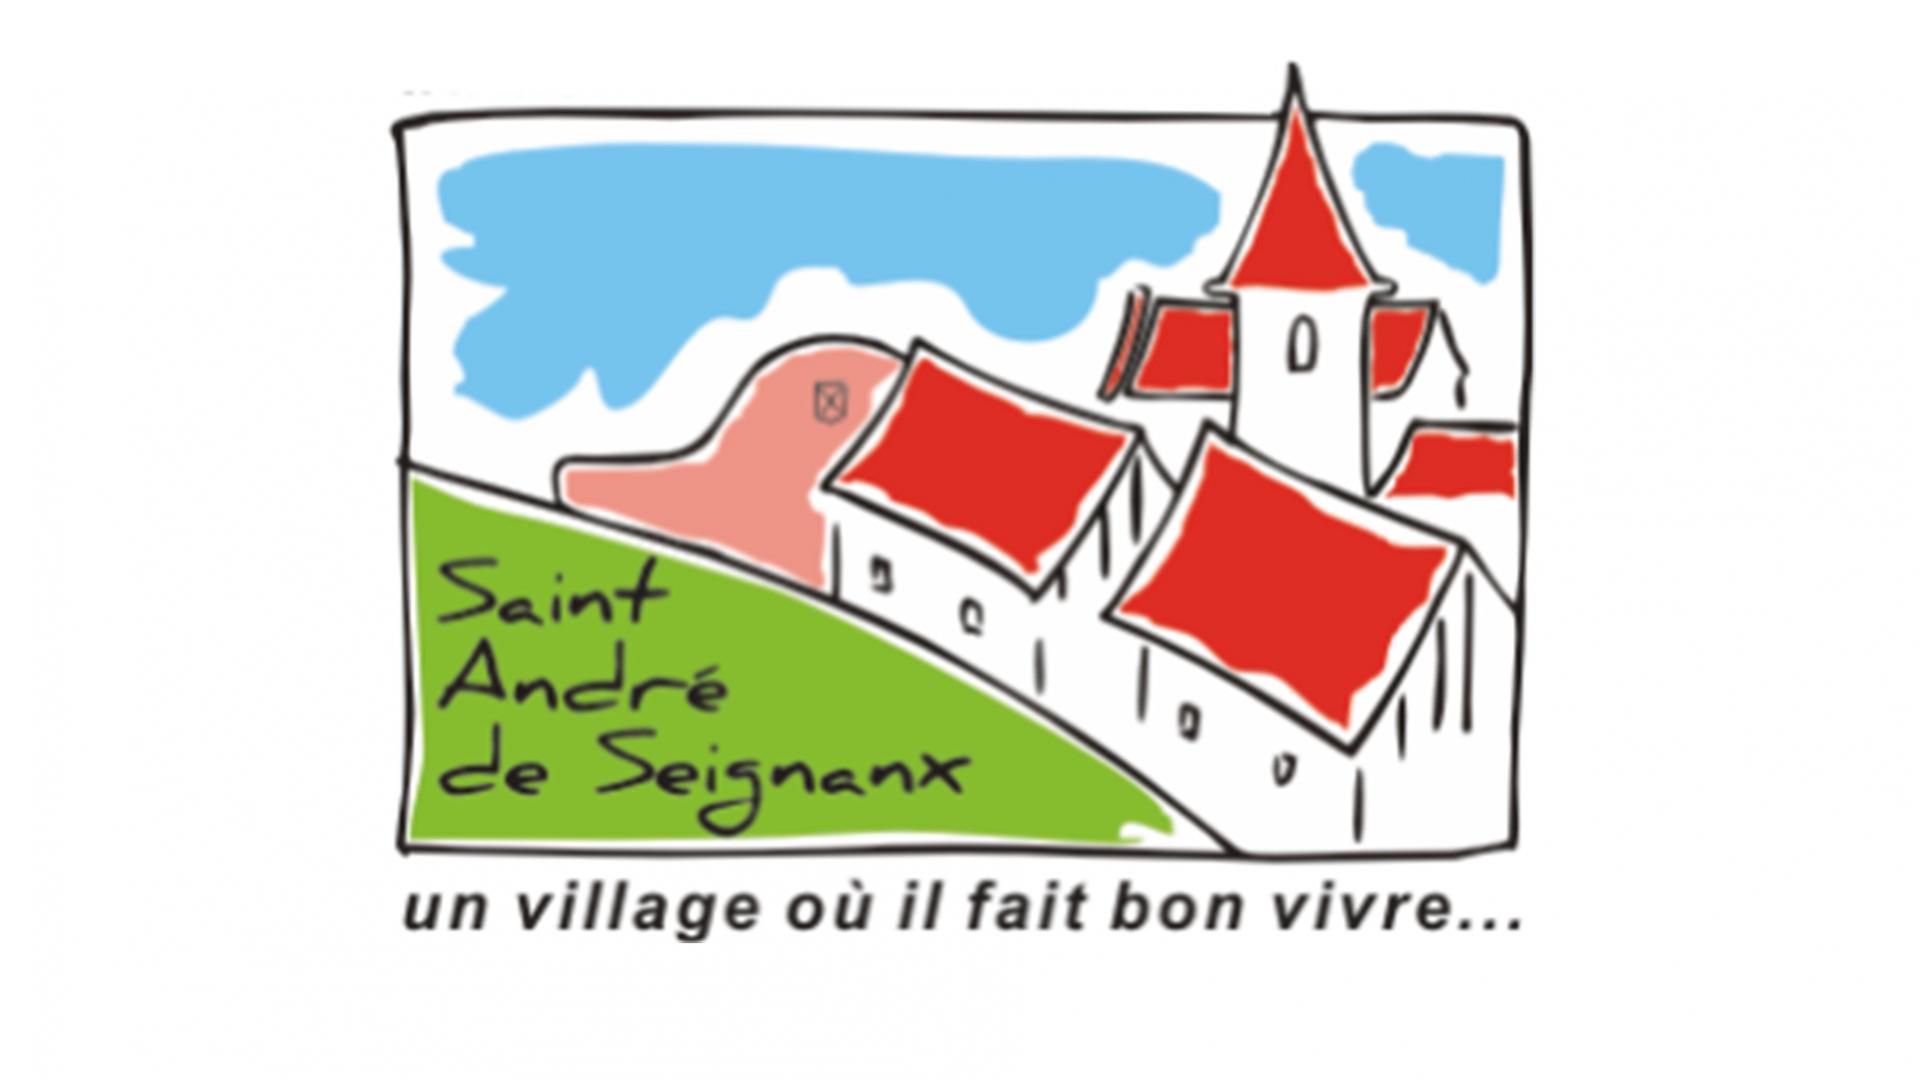 St André de Sx.jpg